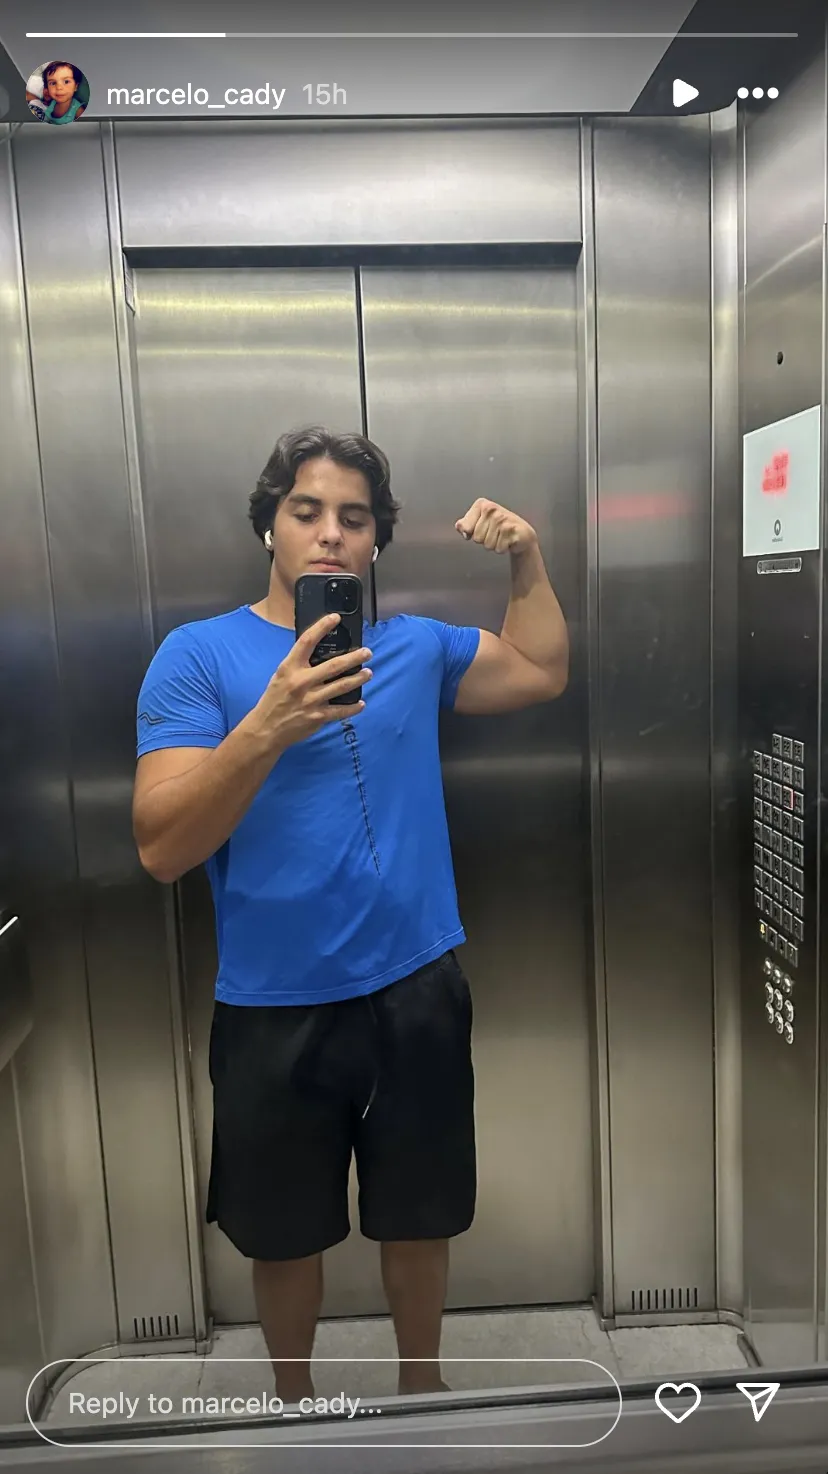 Filho de Ivete Sangalo exibe o braço musculoso em nova selfie